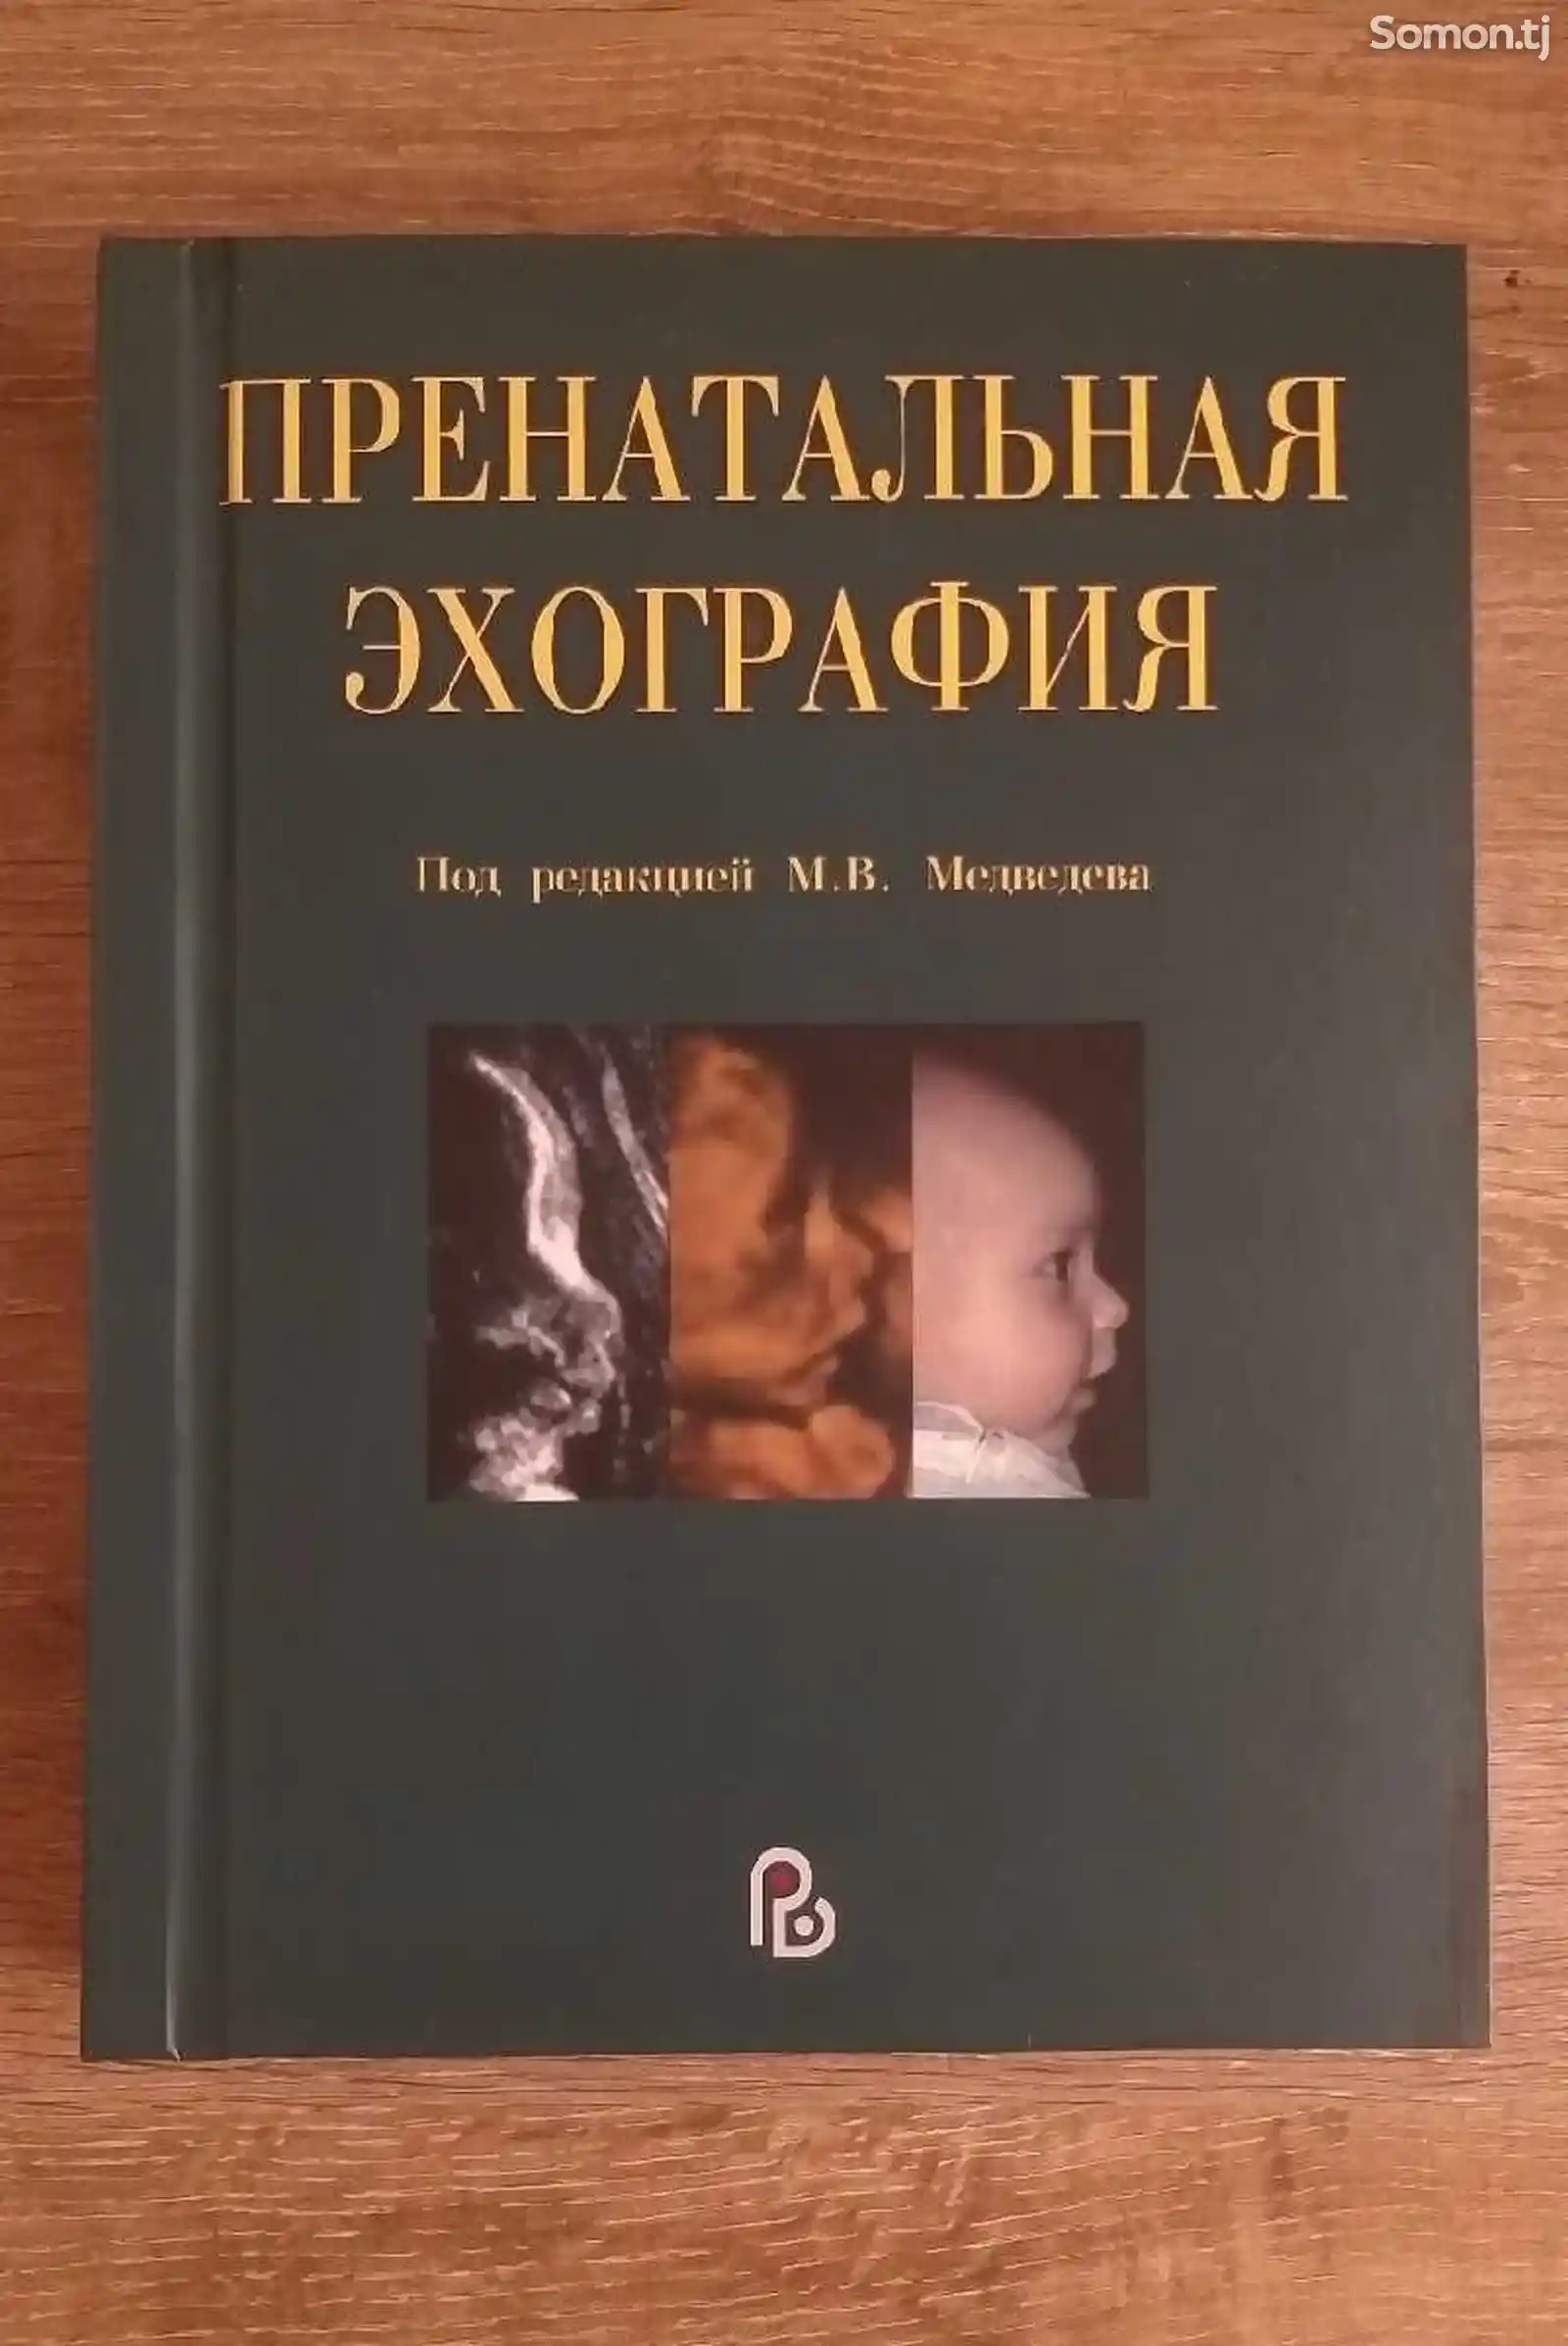 Книга Пренатальная эхо-графия-1